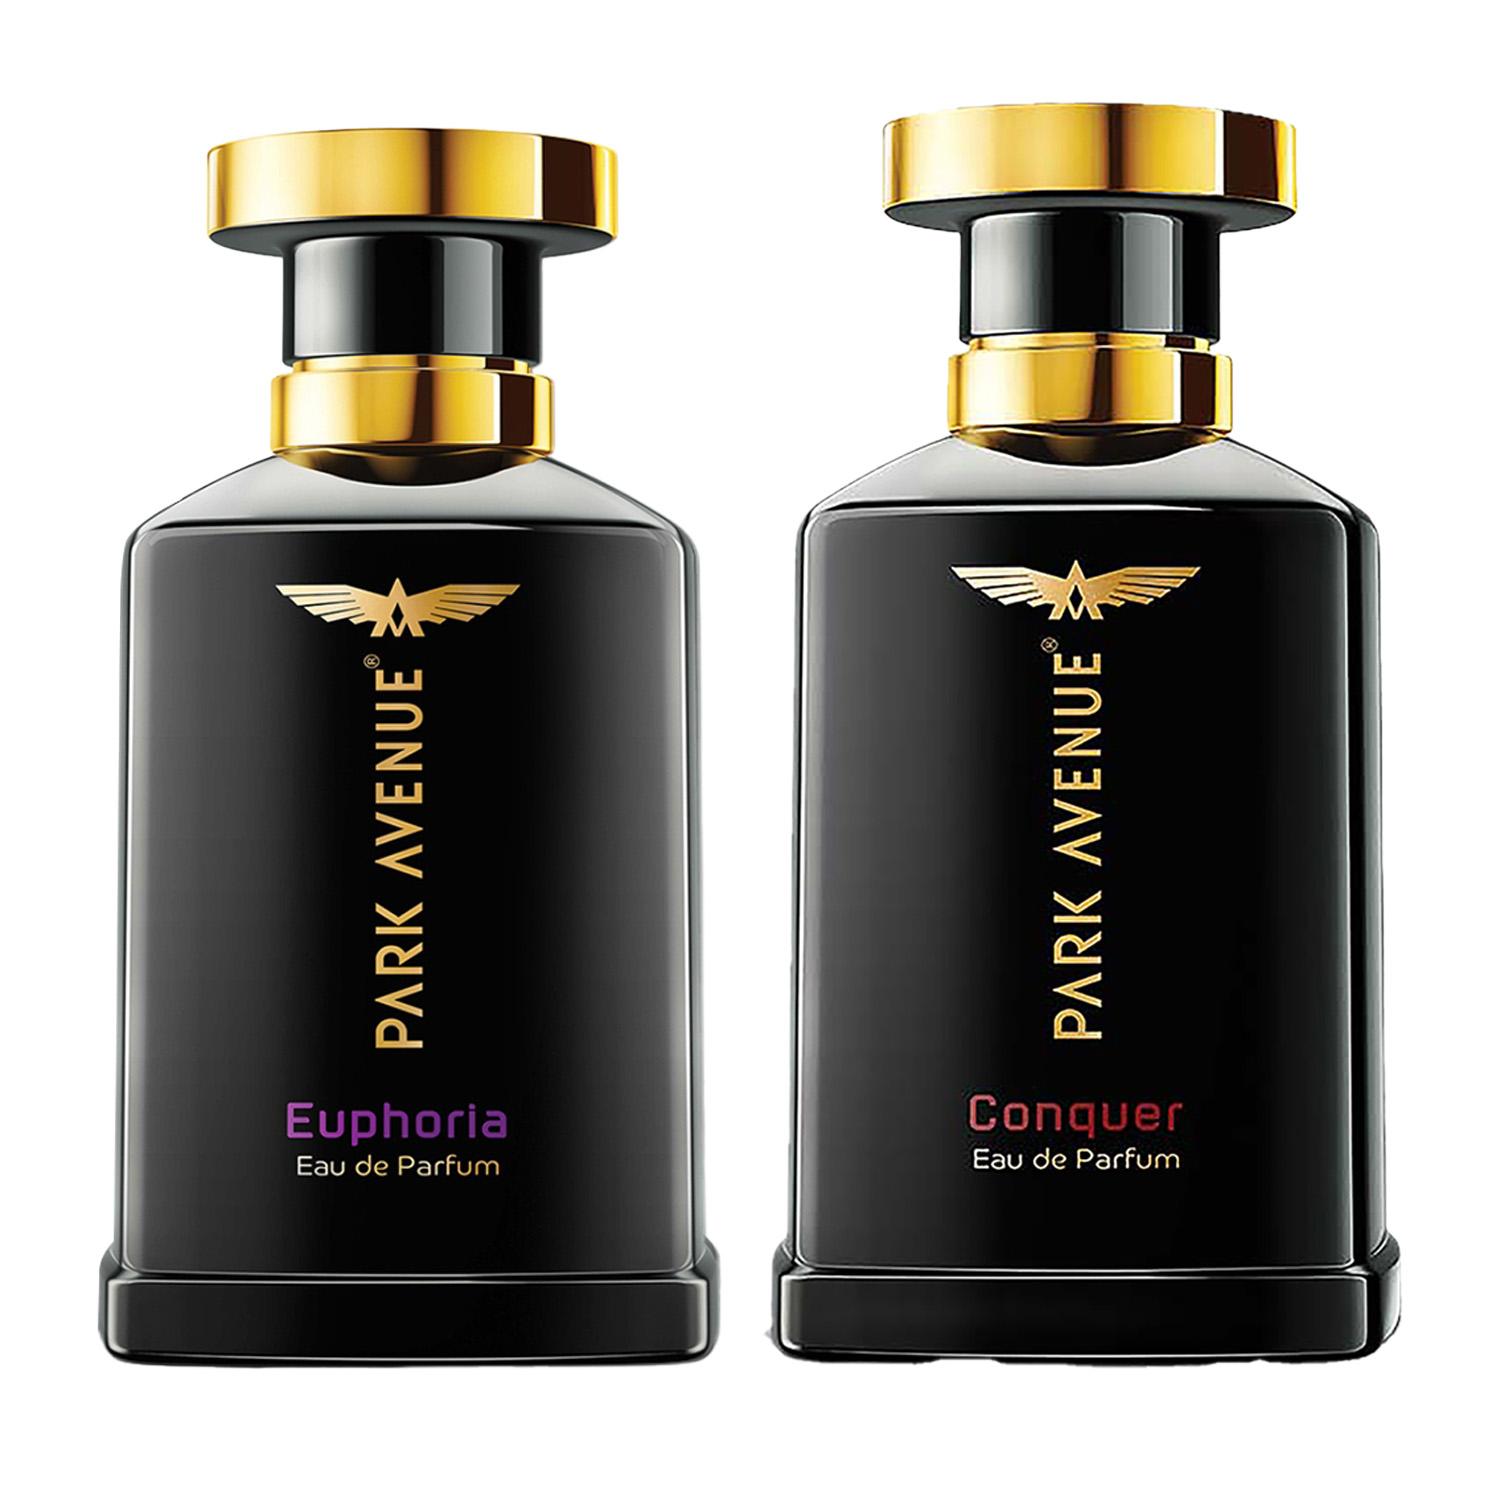 Park Avenue | Park Avenue Eau De Perfum Euphoria (100 ml) & Eau De Perfum Conquer (100 ml) Combo